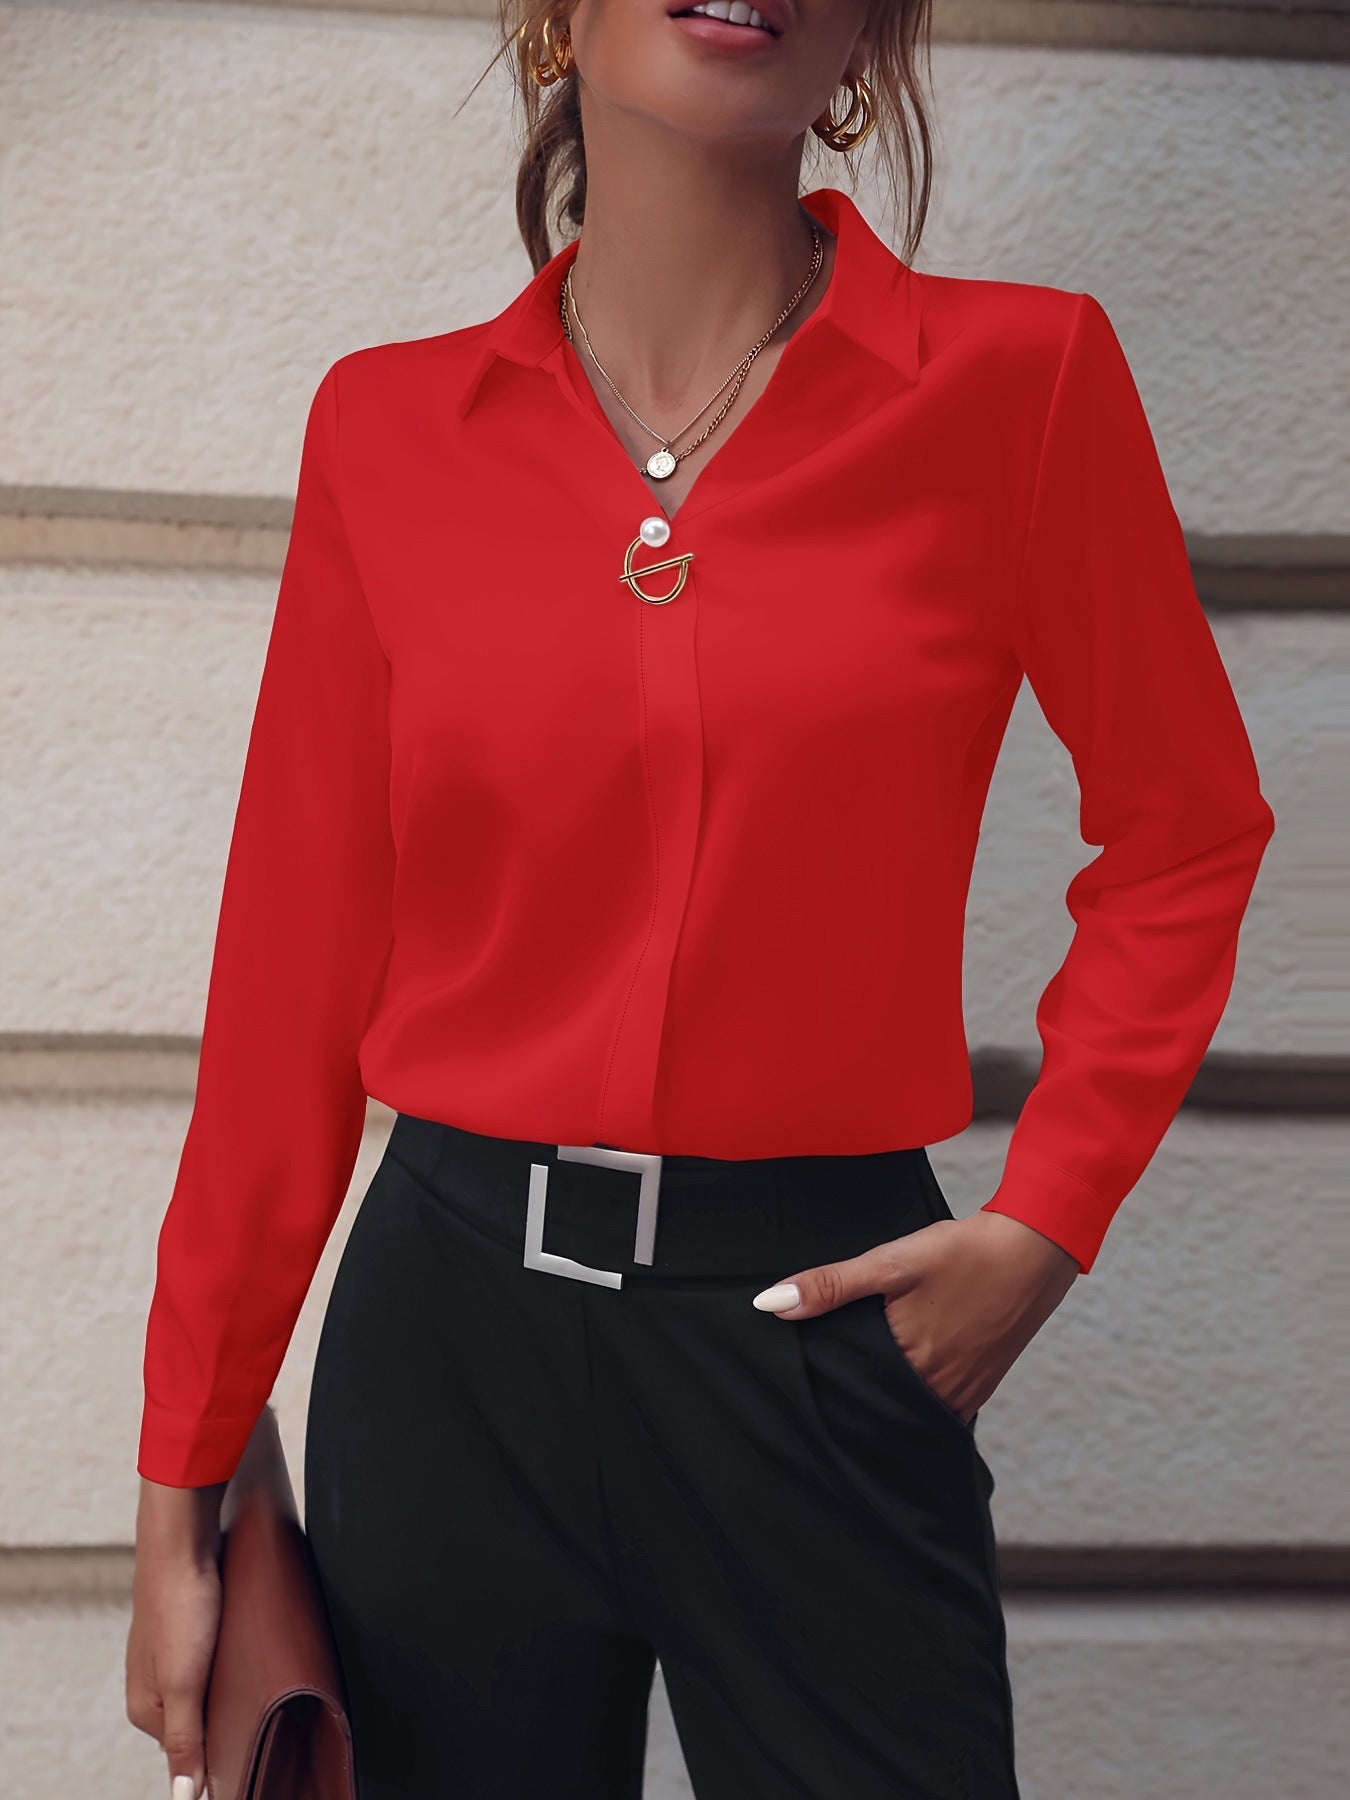 Commuter Women's Shirt Versatile Simple Solid Color Long Sleeve Mid-length Plus Size